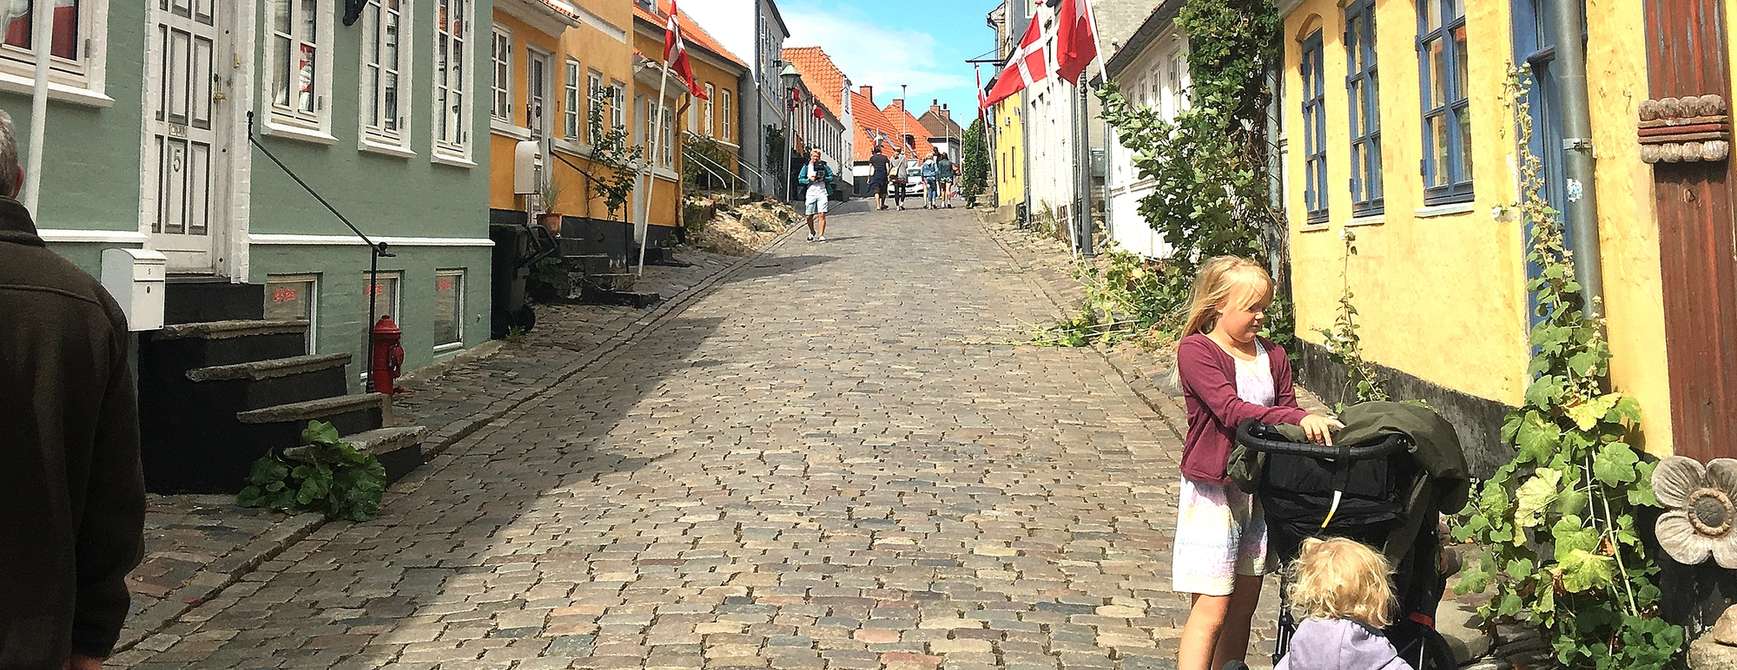 Familie nyter livet i en av de mange koselige brosteinsgatene i Danmark